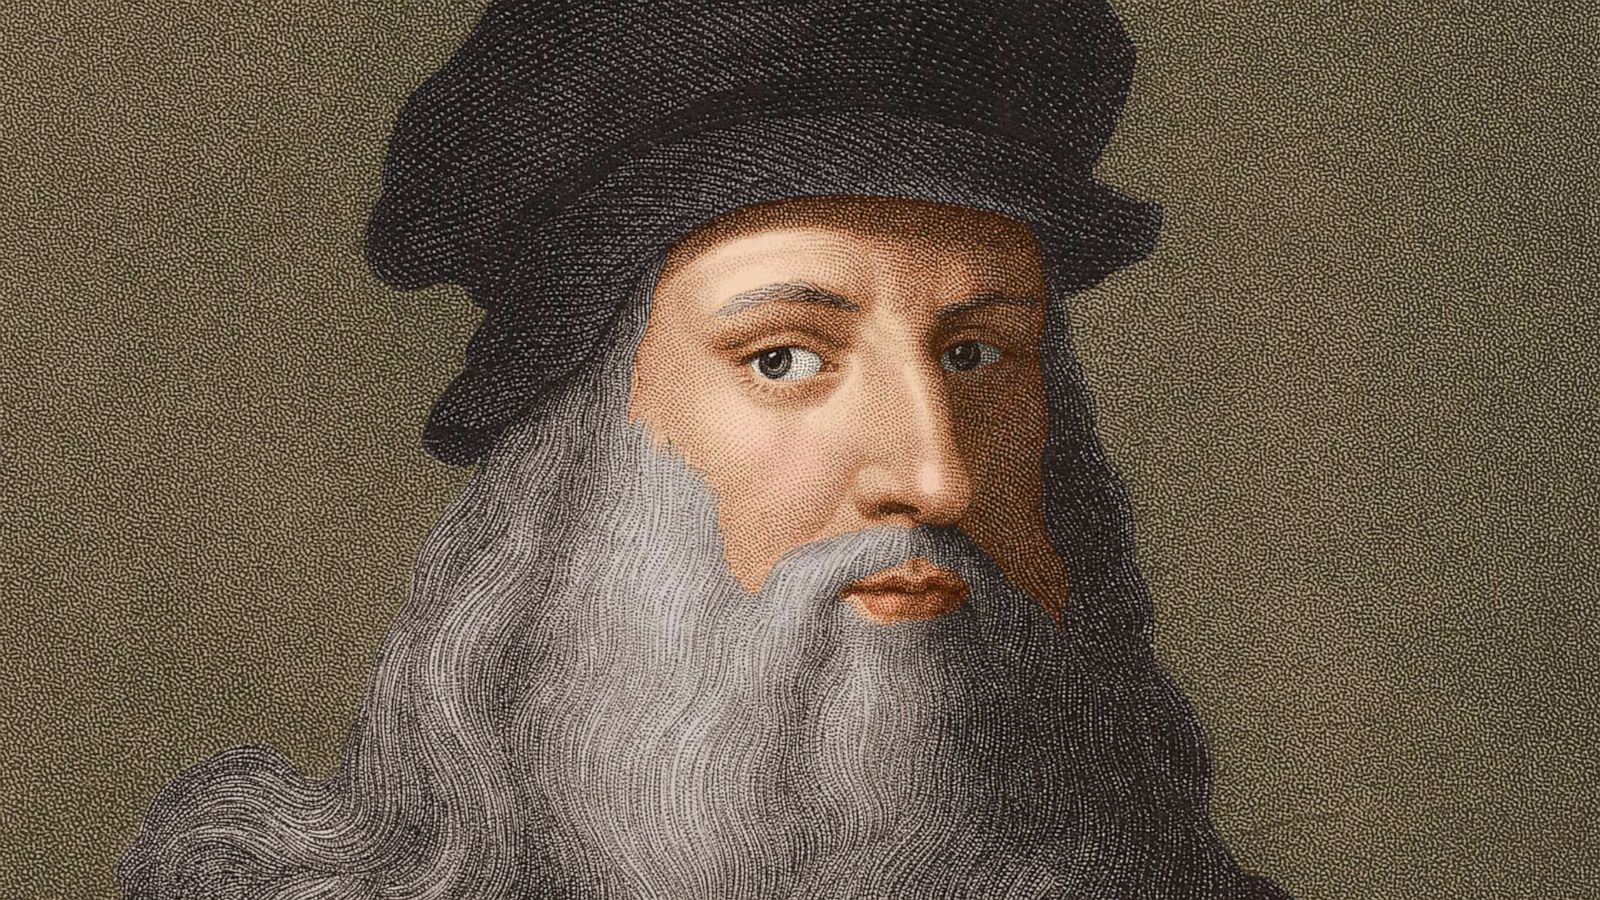 Leonardo da Vinci alive and kicking